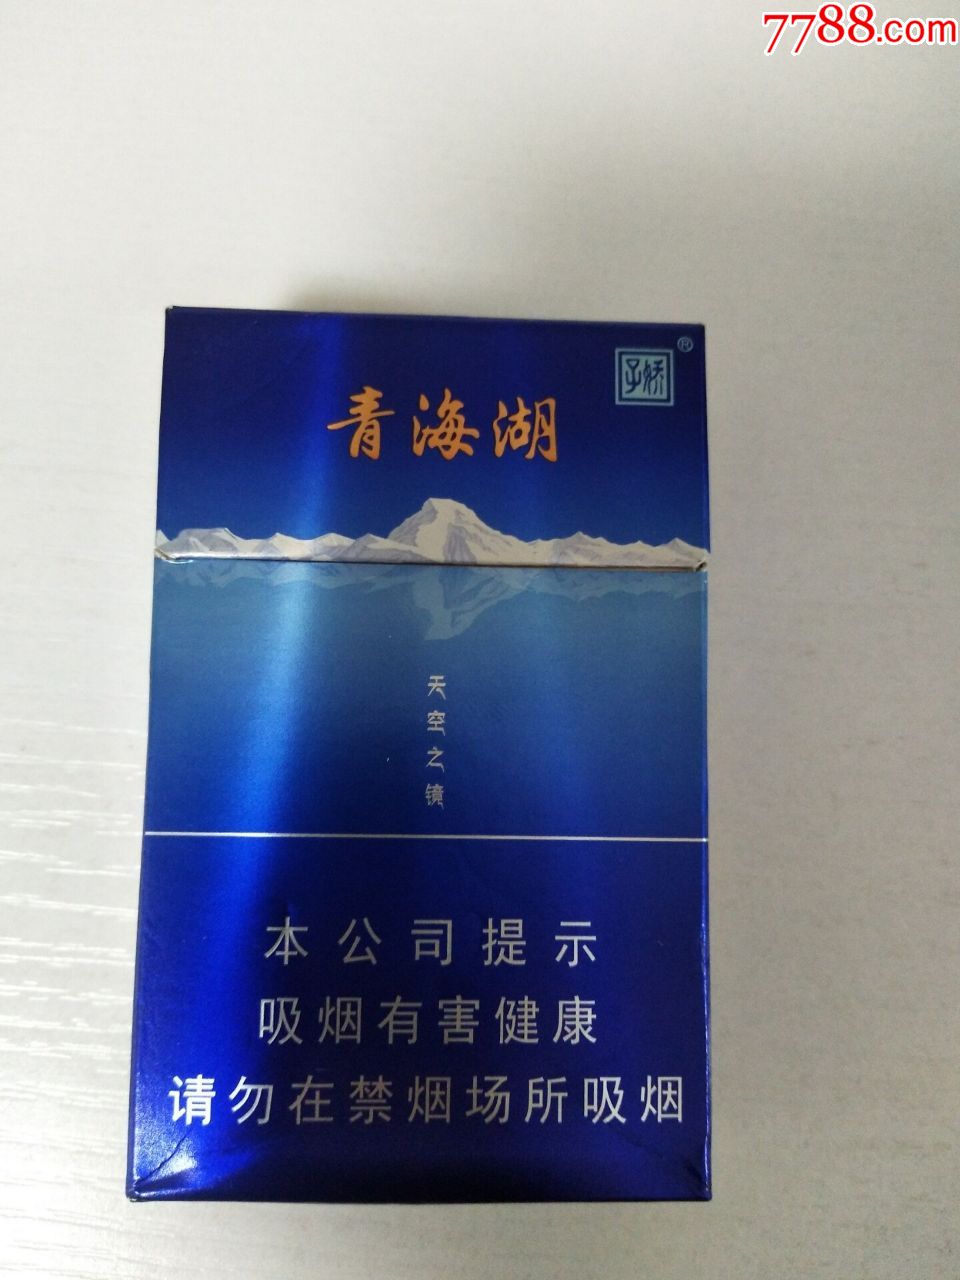 青海湖60一包的烟图片